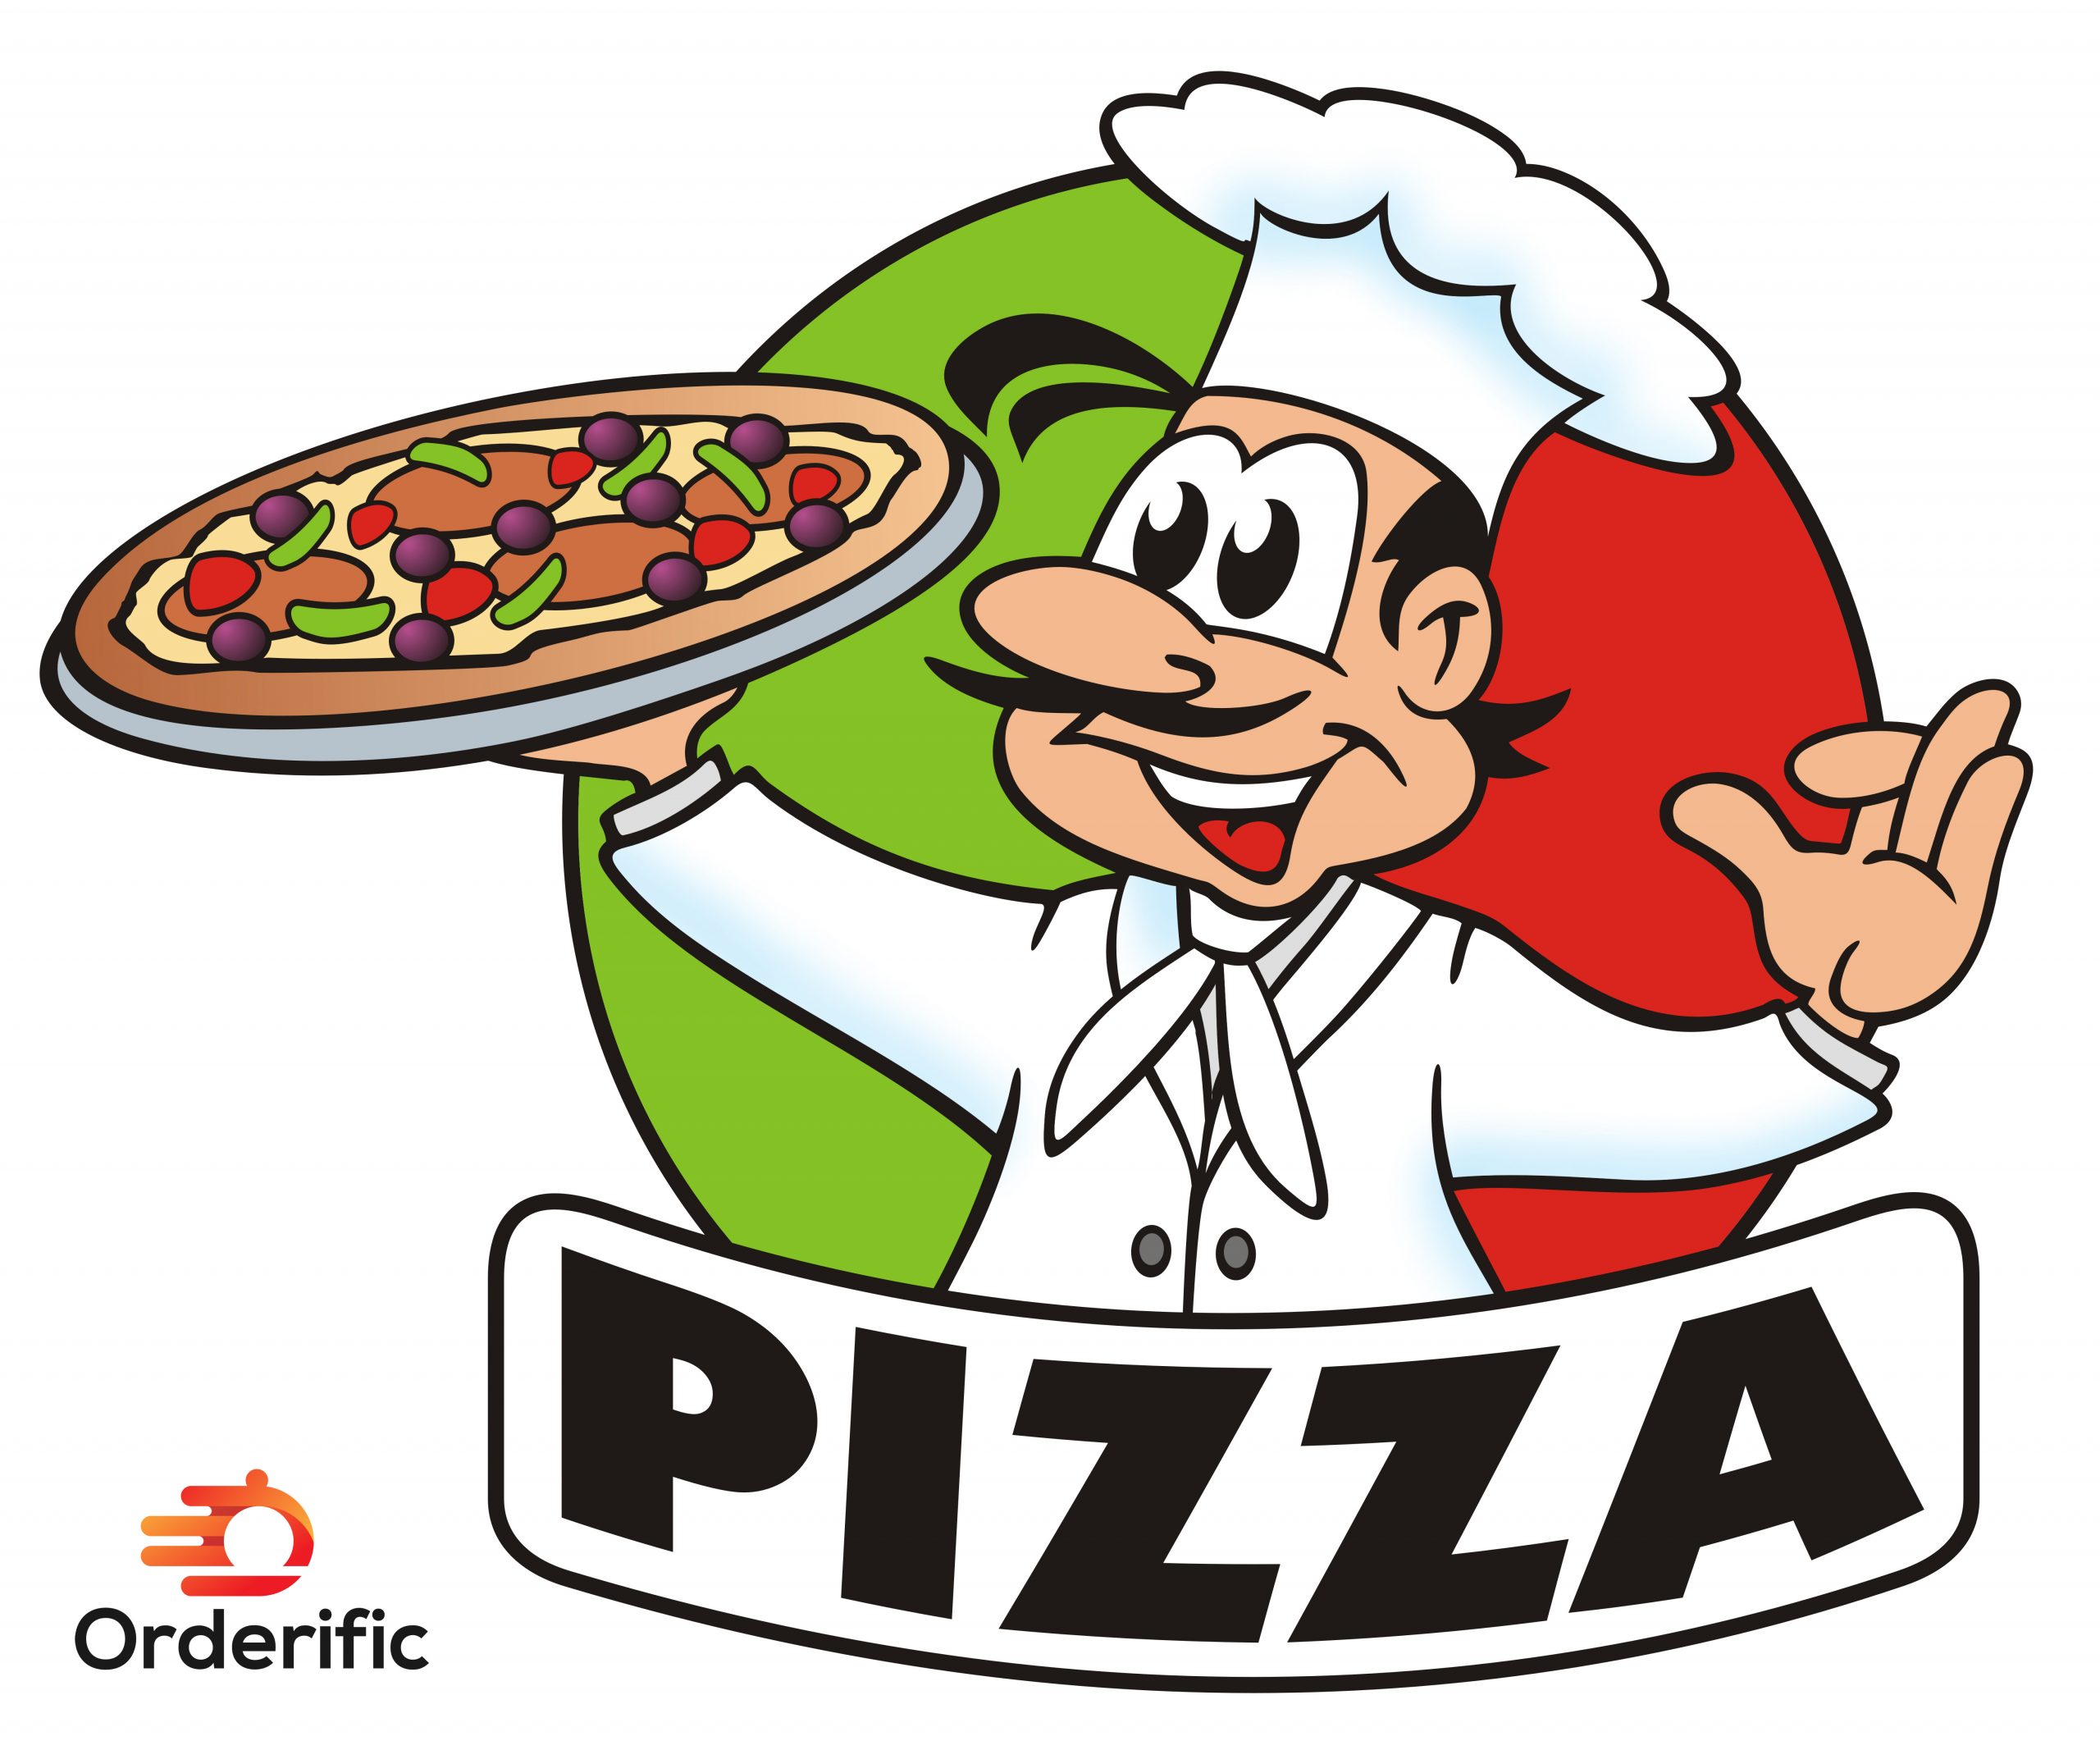 pizzeria logo